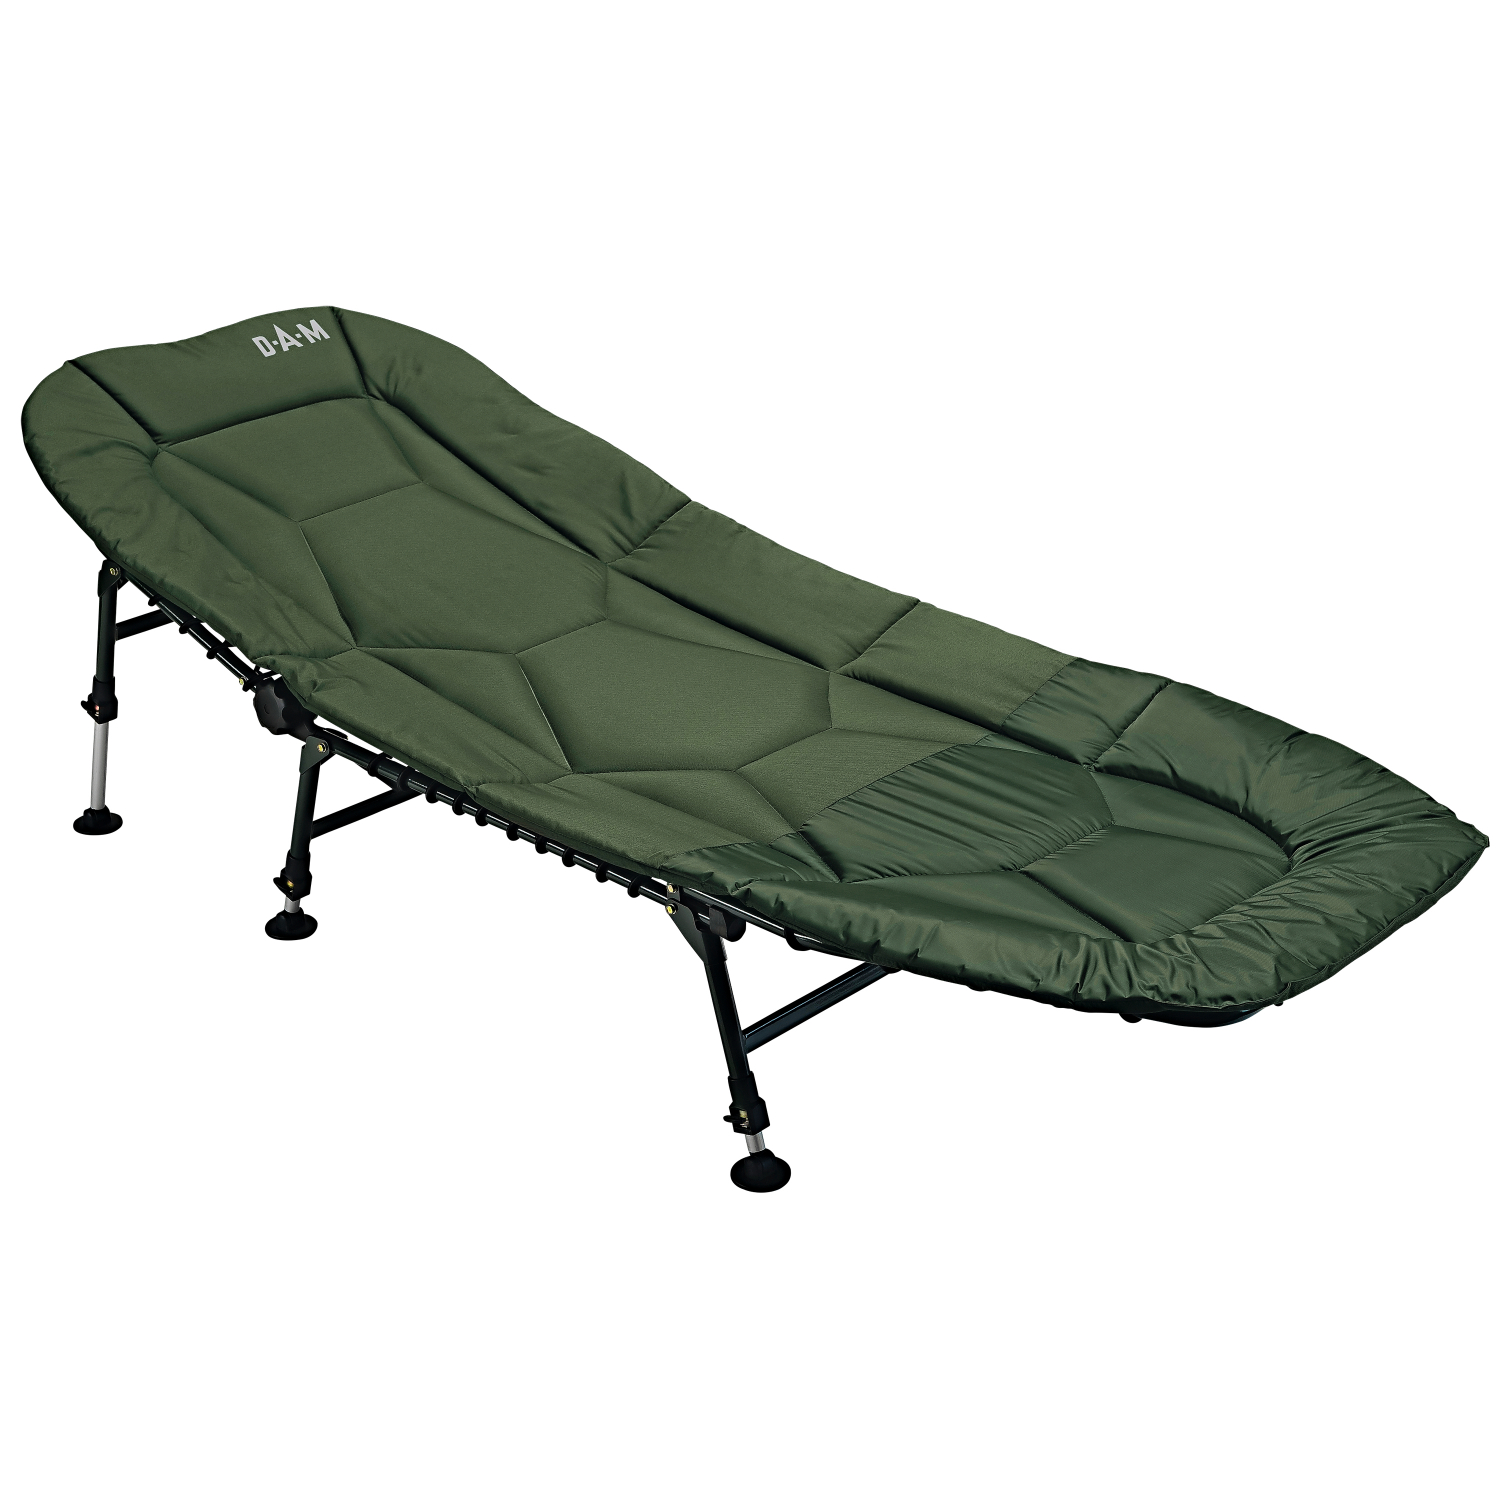 DAM DAM Bedchair Six-Leg Steel carp lounger 